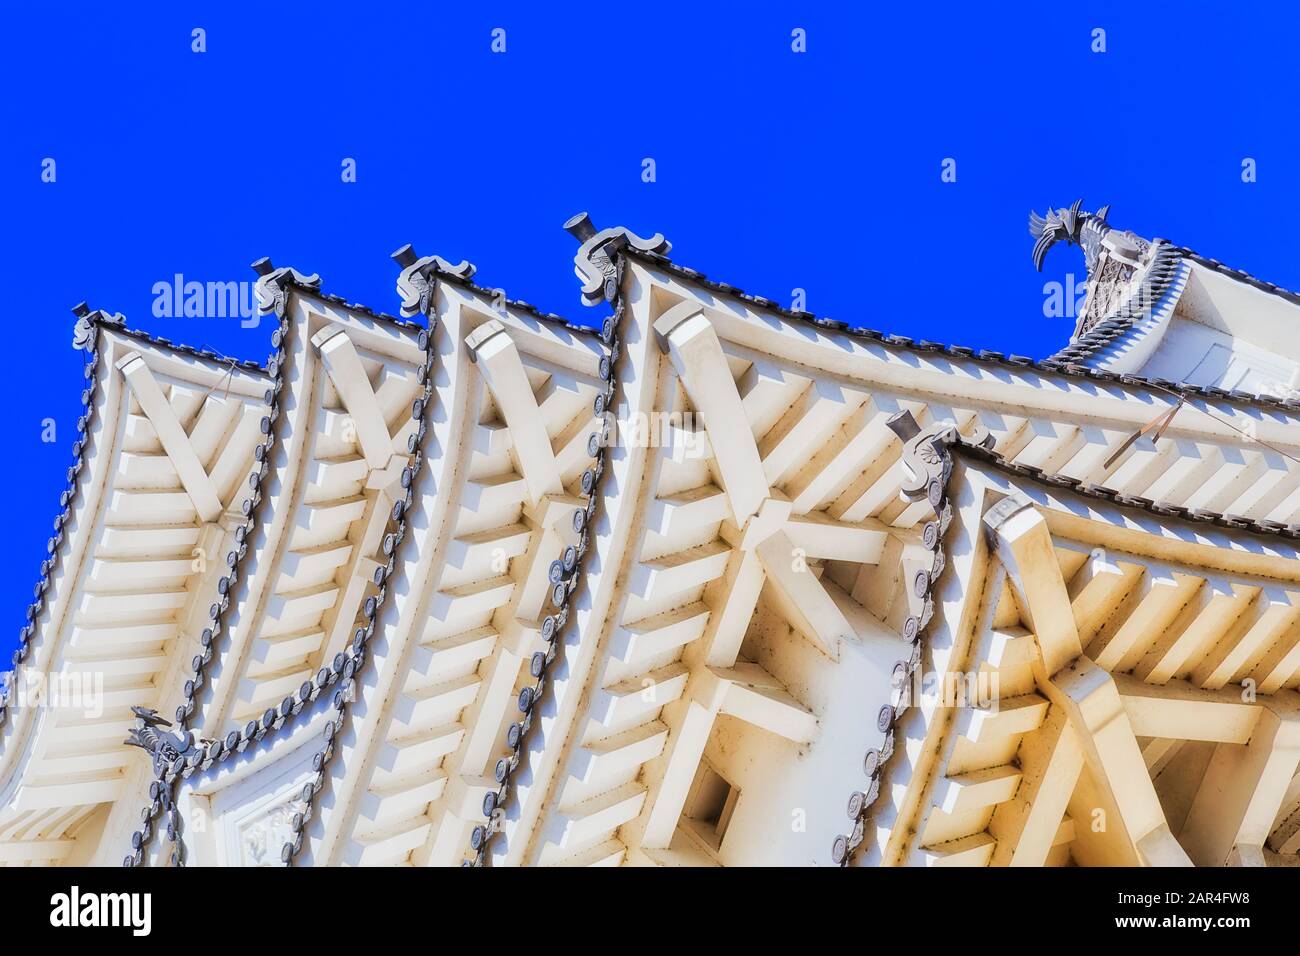 Toit japonais traditionnel sur le château historique de shogun contre le ciel bleu par une journée ensoleillée - sous la structure et les poutres. Banque D'Images